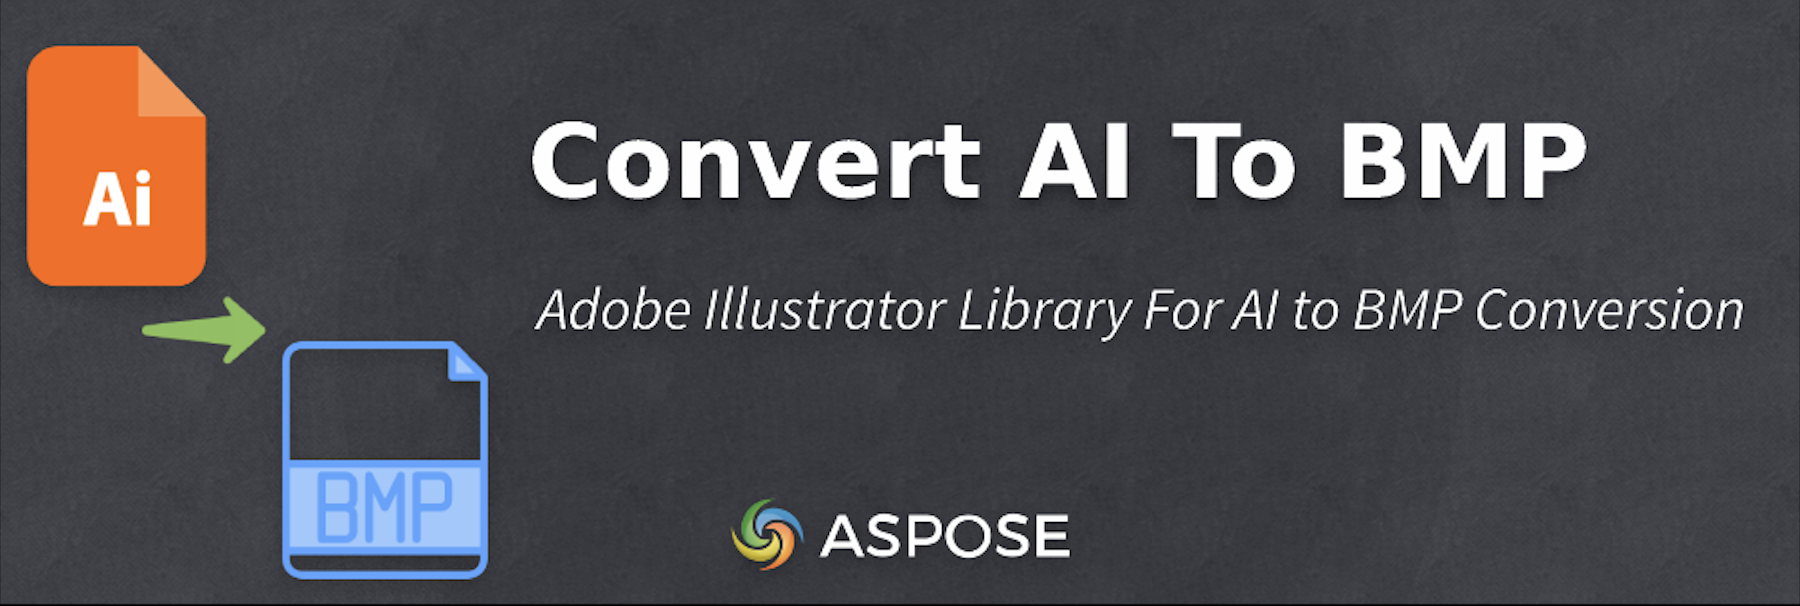 Converti AI in BMP in Java - Libreria di Adobe Illustrator